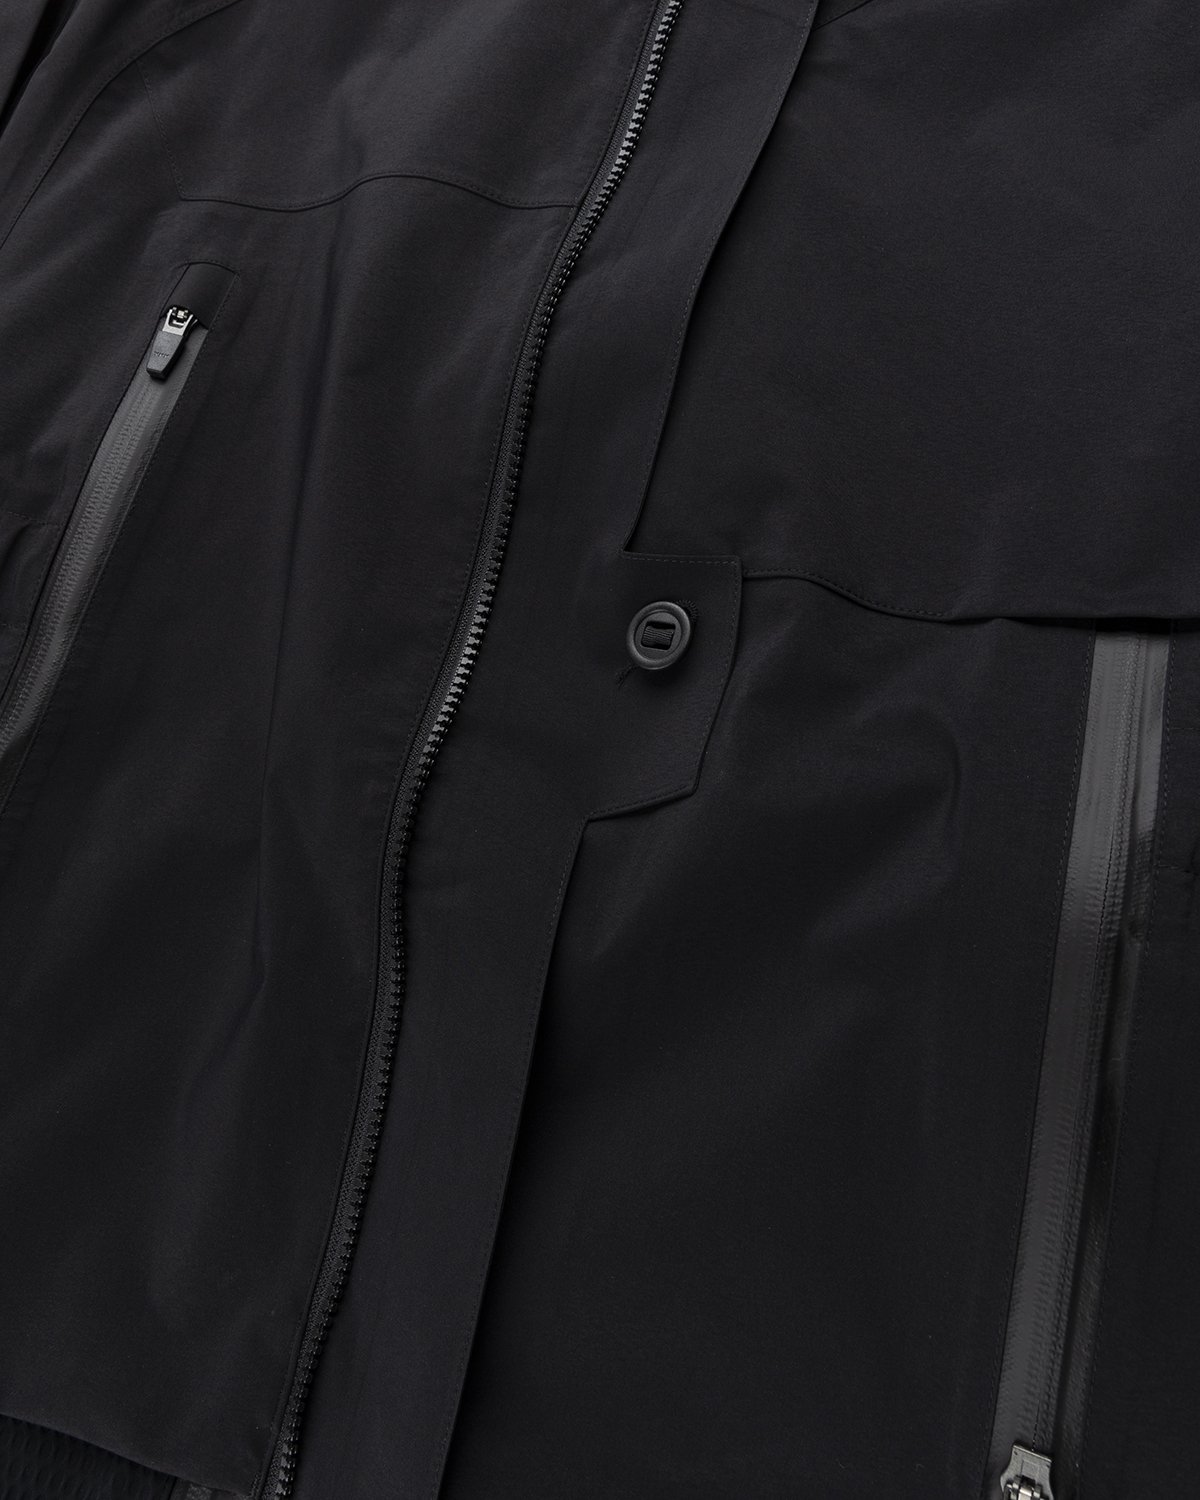 ACRONYM - J16-GT Jacket Black - Clothing - Black - Image 6